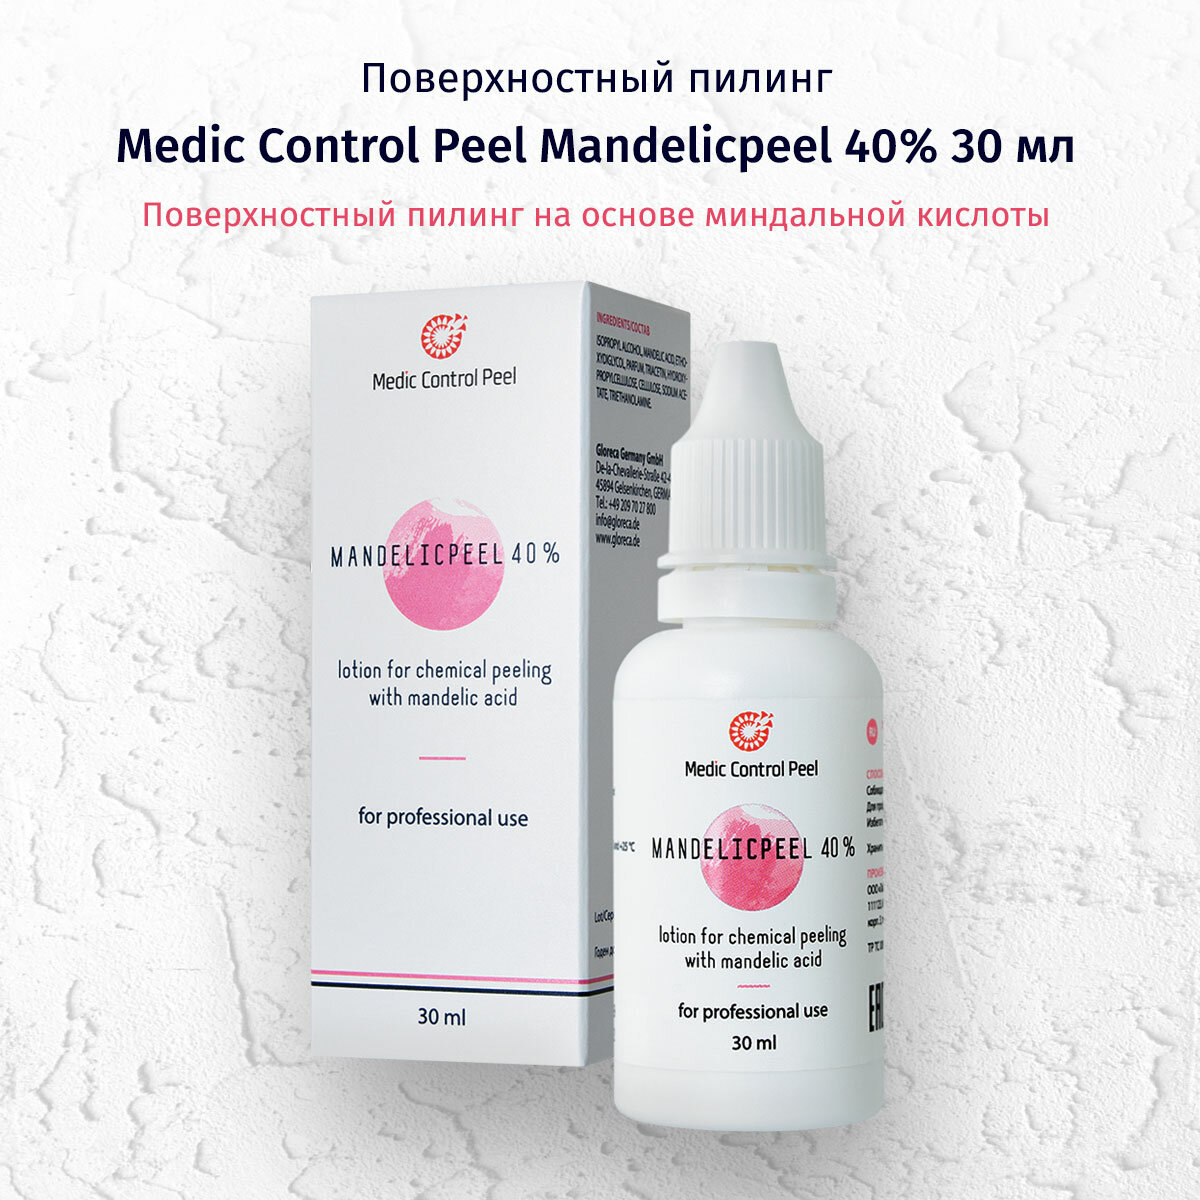 MedicControlPeel пилинг химический Mandelicpeel 40% с миндальной кислотой, 30 мл